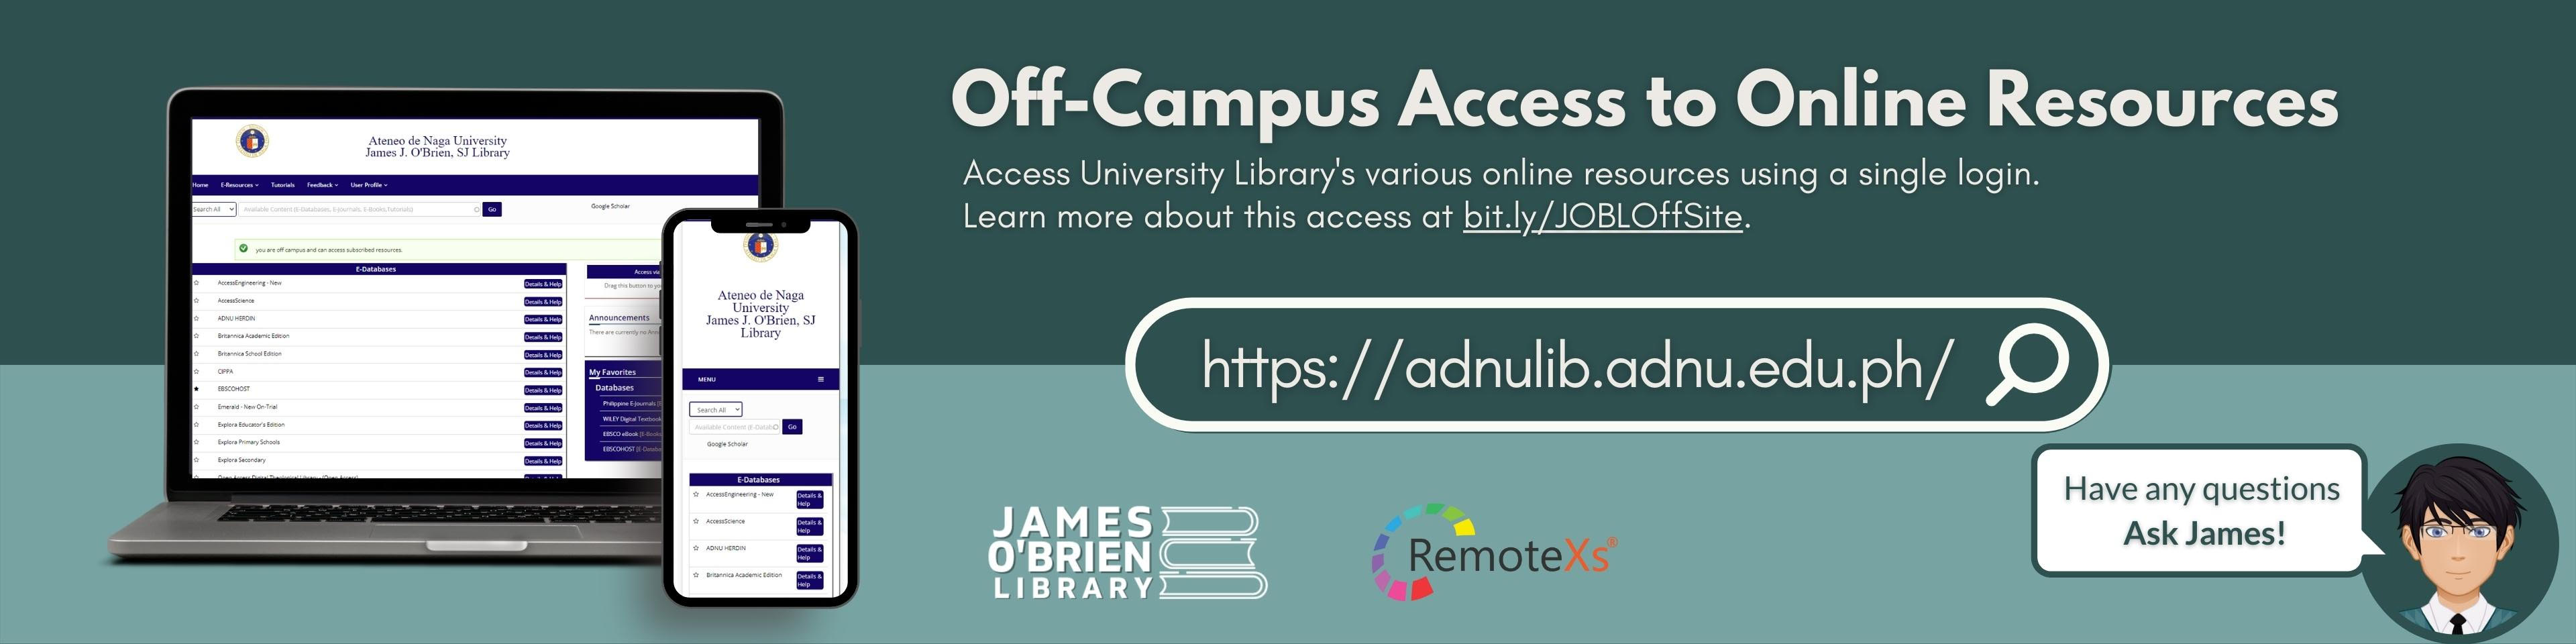 off-campus access